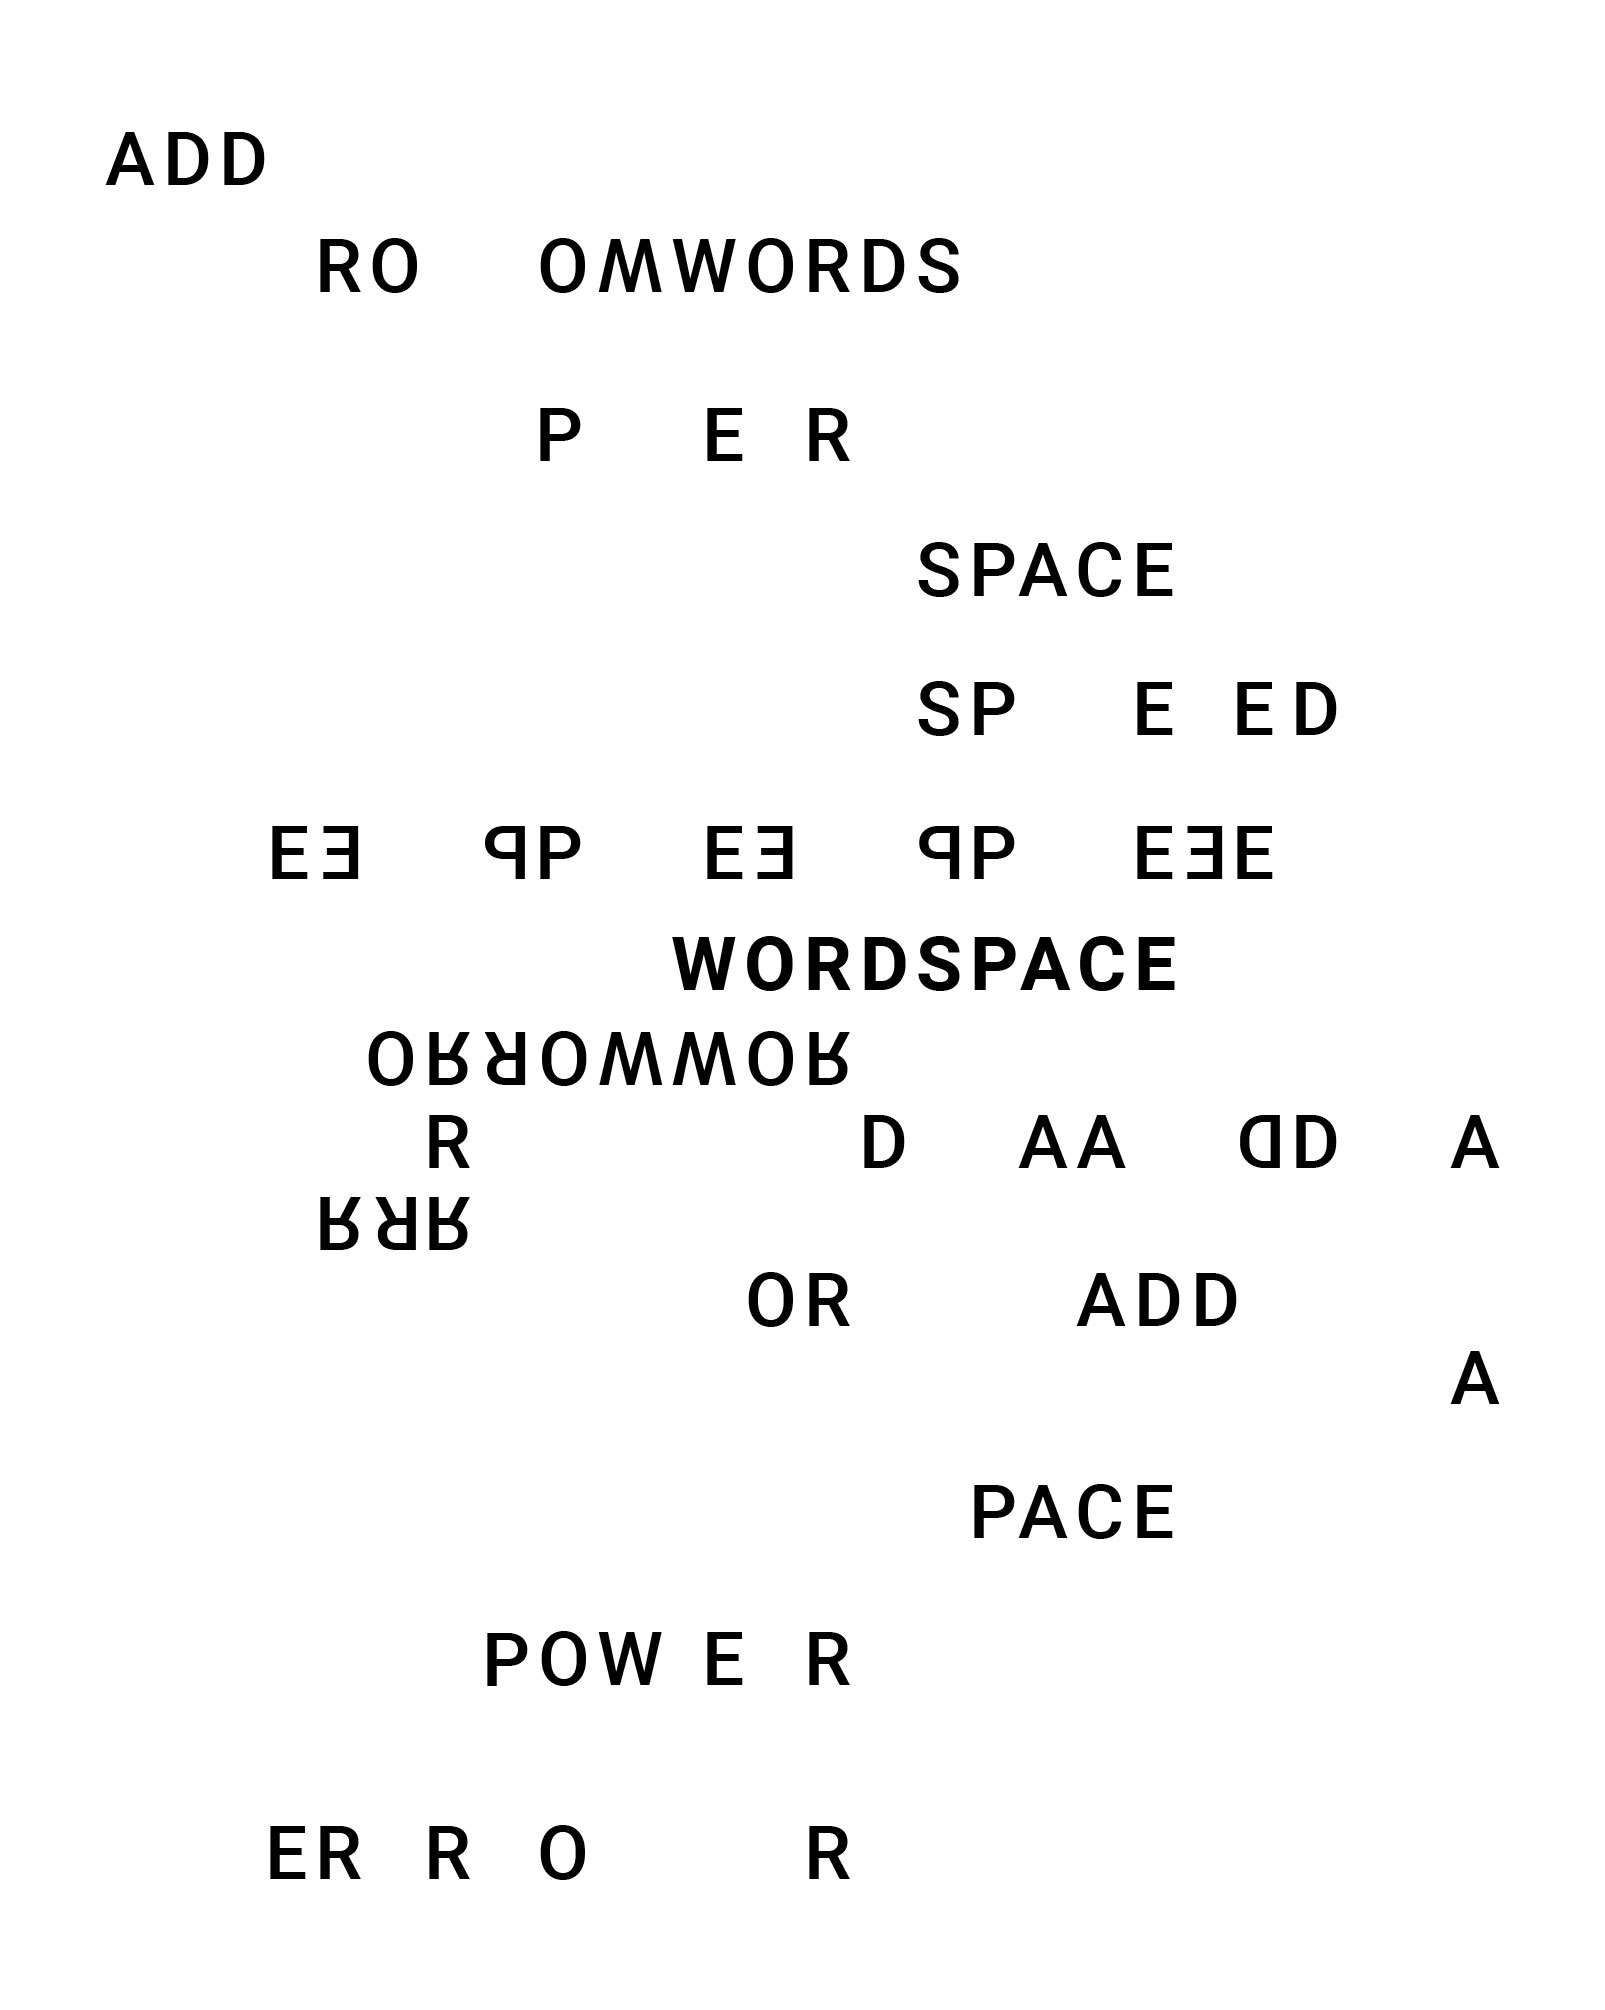 wordspace